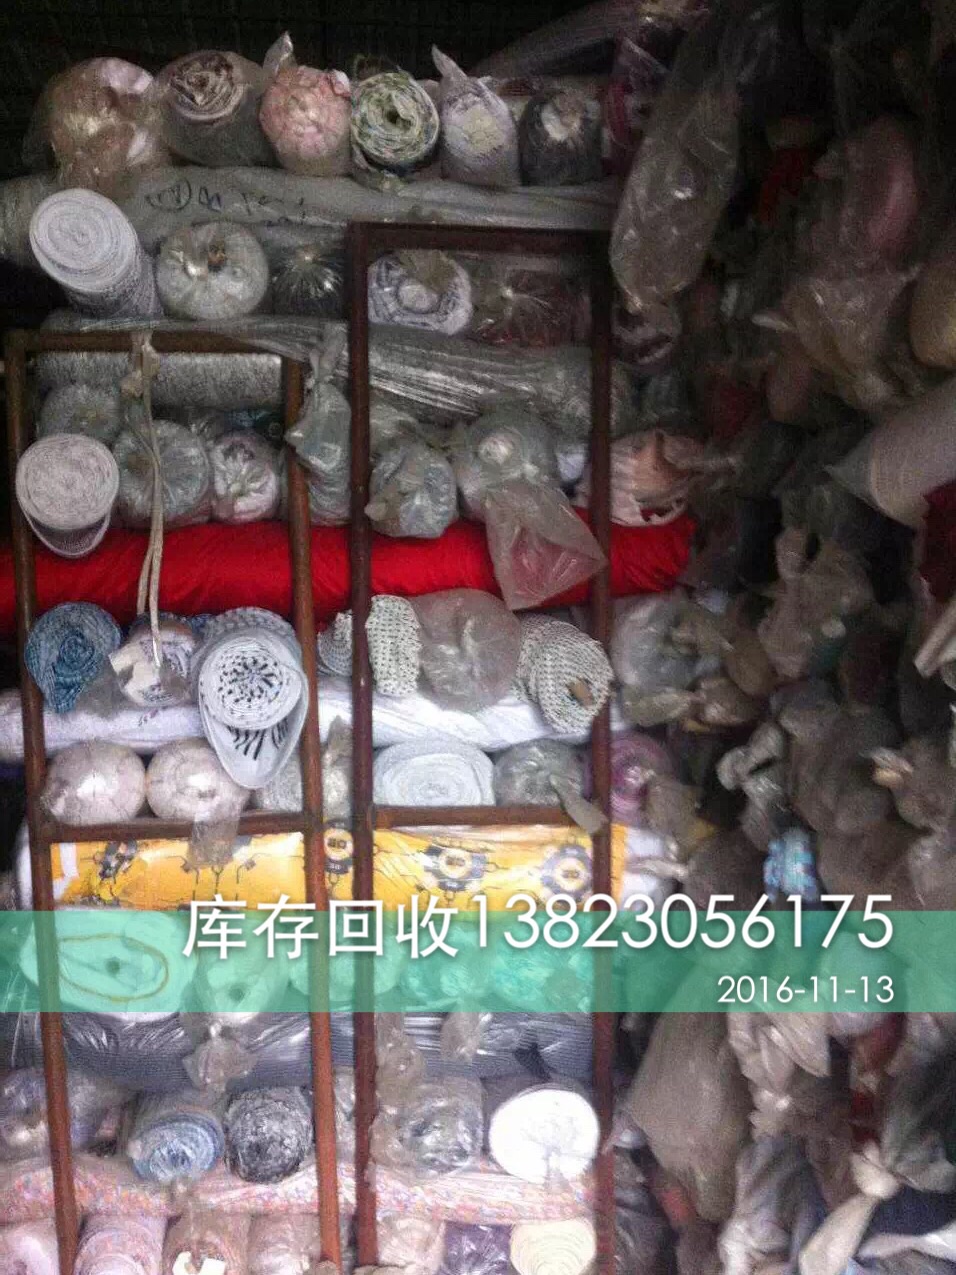 广州专业回收库存布料高价回收库存布料广州布料回收公司广州回收布料公司收购回收布料回收库存服装布料